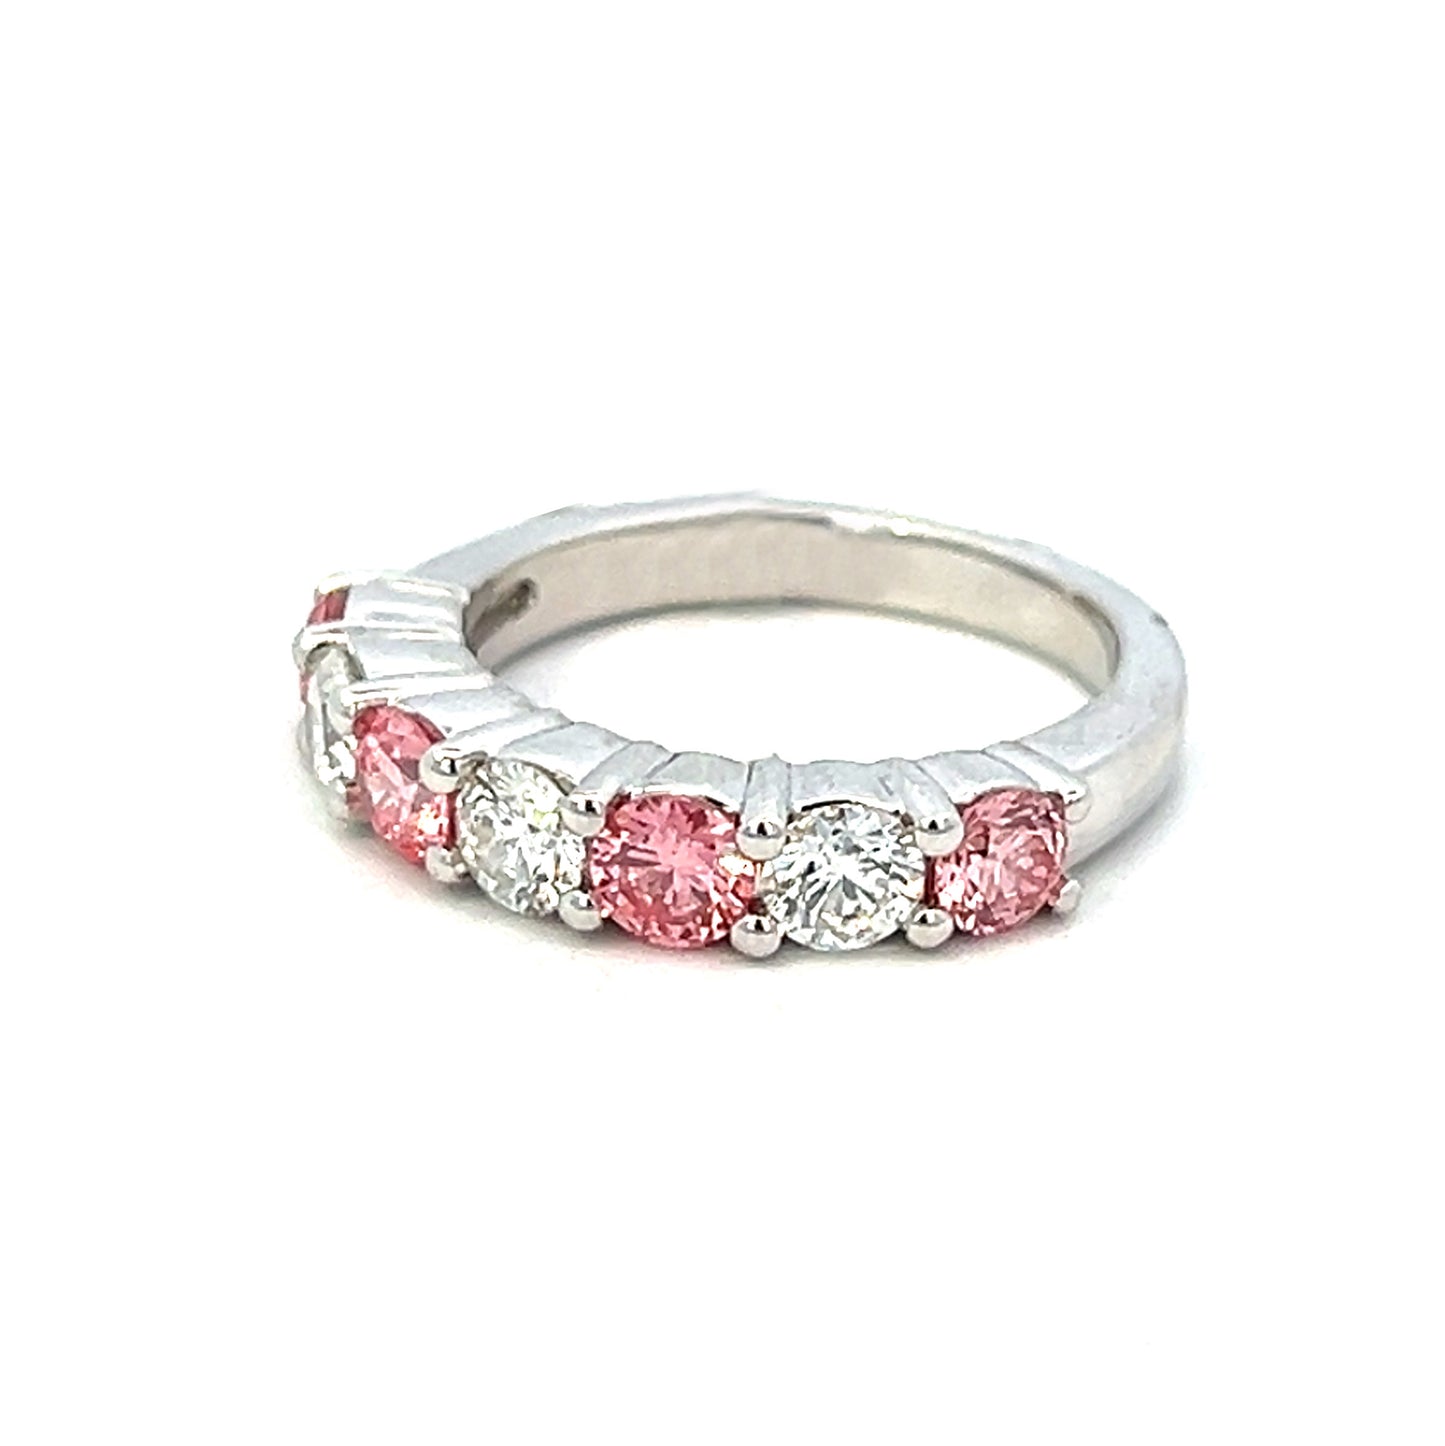 1.75cttw Pink Diamond Ring | Pink Diamonds Rings | Lab Grown Pink Diamond Ring